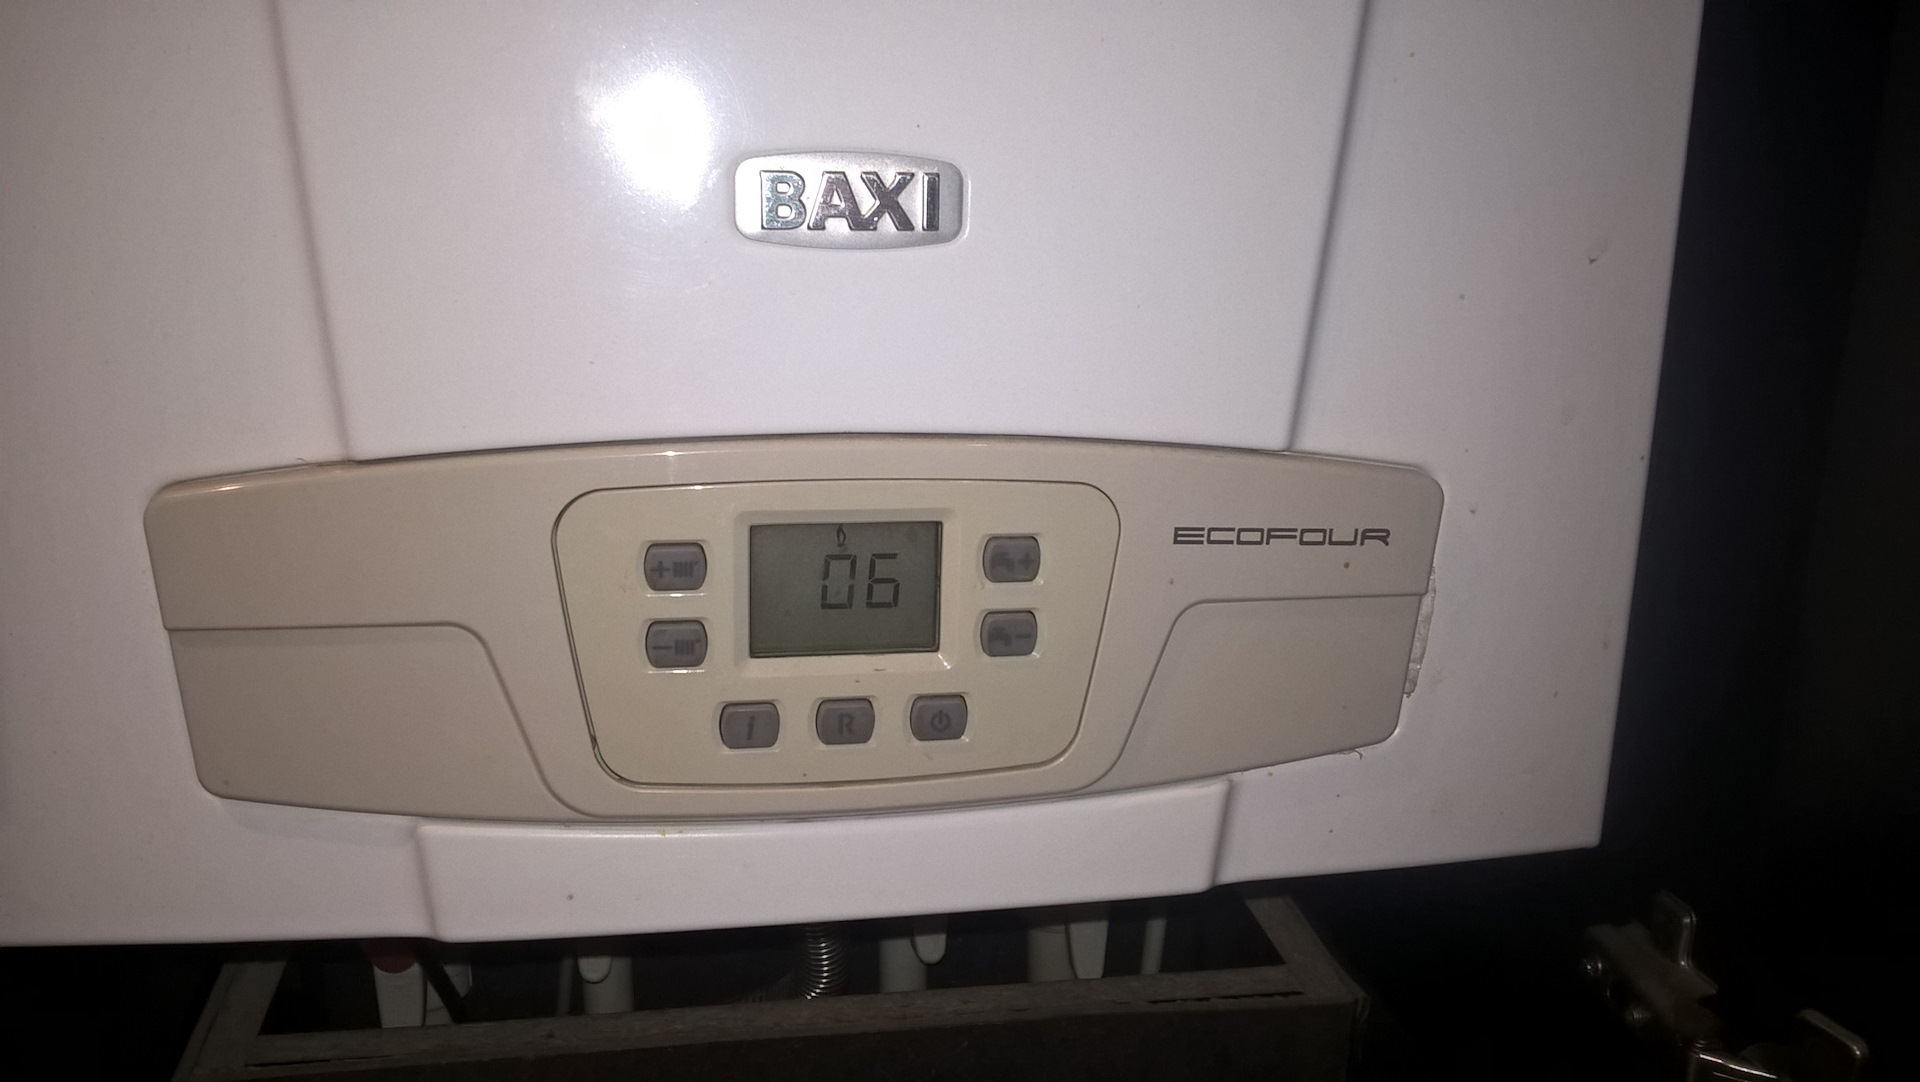 Baxi Eco four датчики температуры